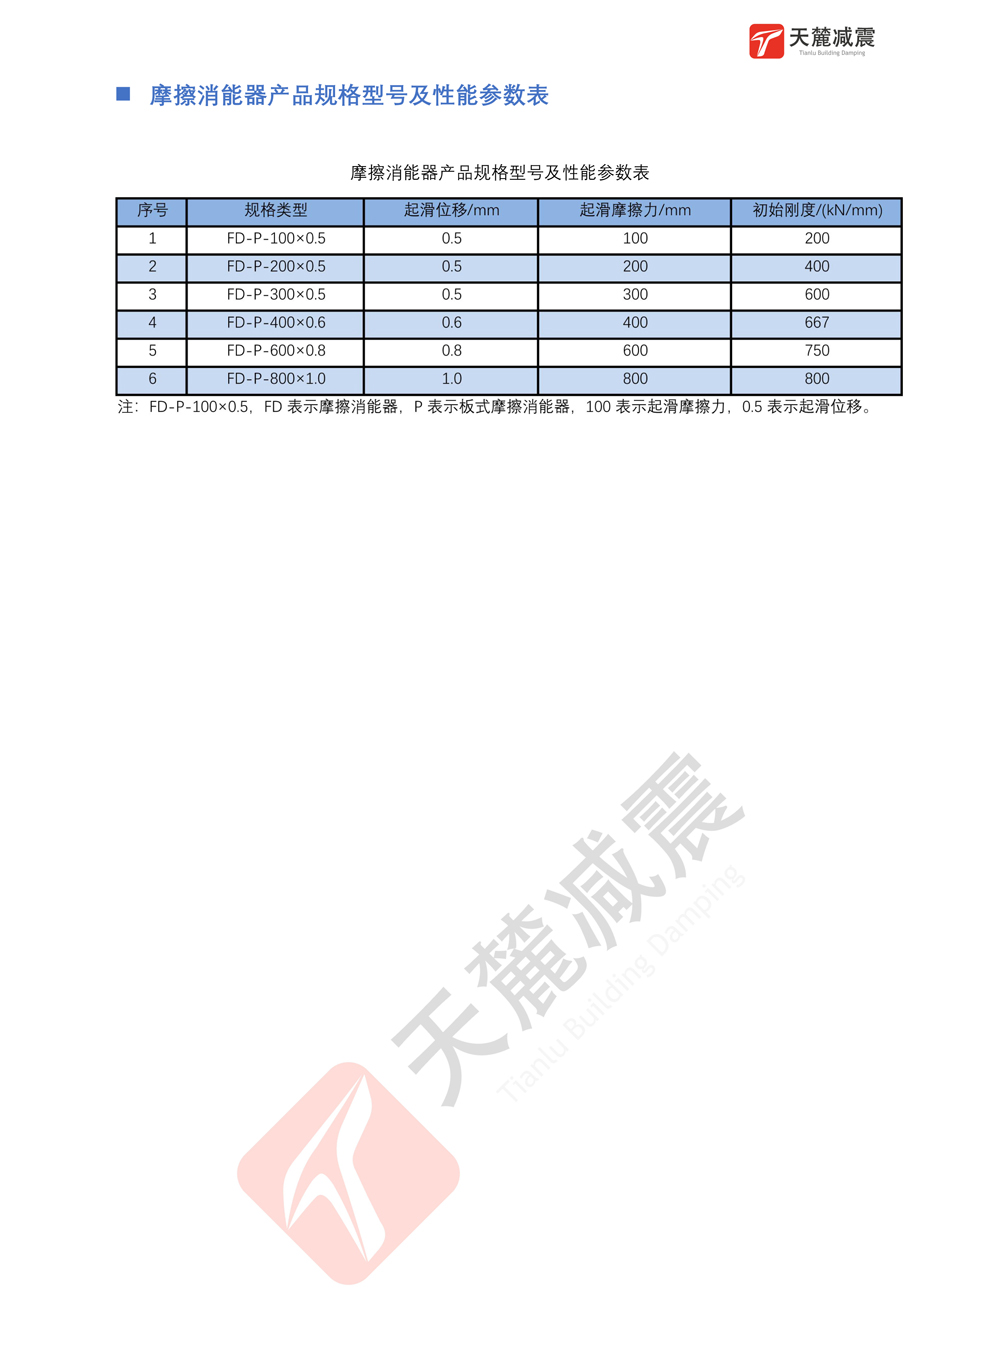 摩擦型阻尼器（SFD-MFD）产品参数表 （导出图片）-4-4.jpg